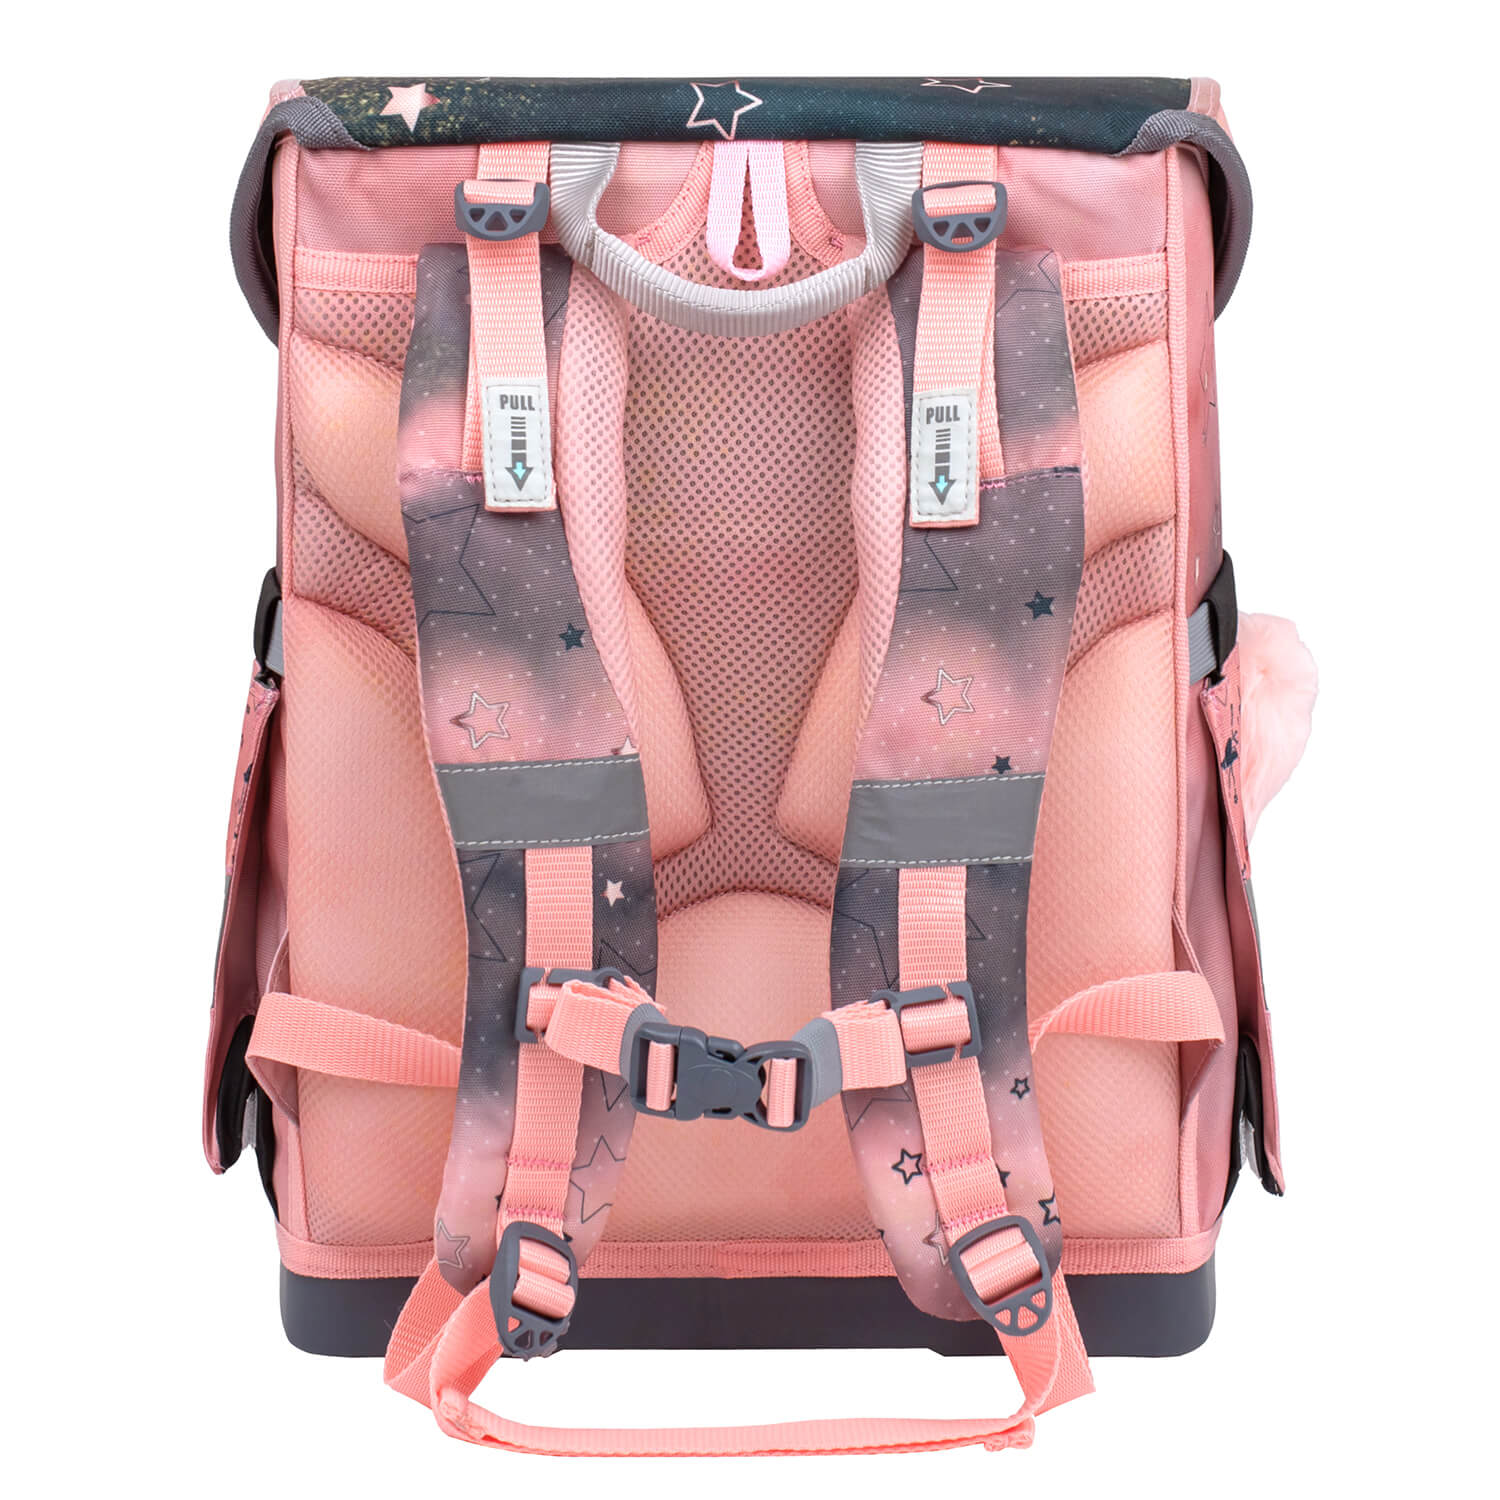 Compact Ballerina Black Pink schoolbag set 4 pcs